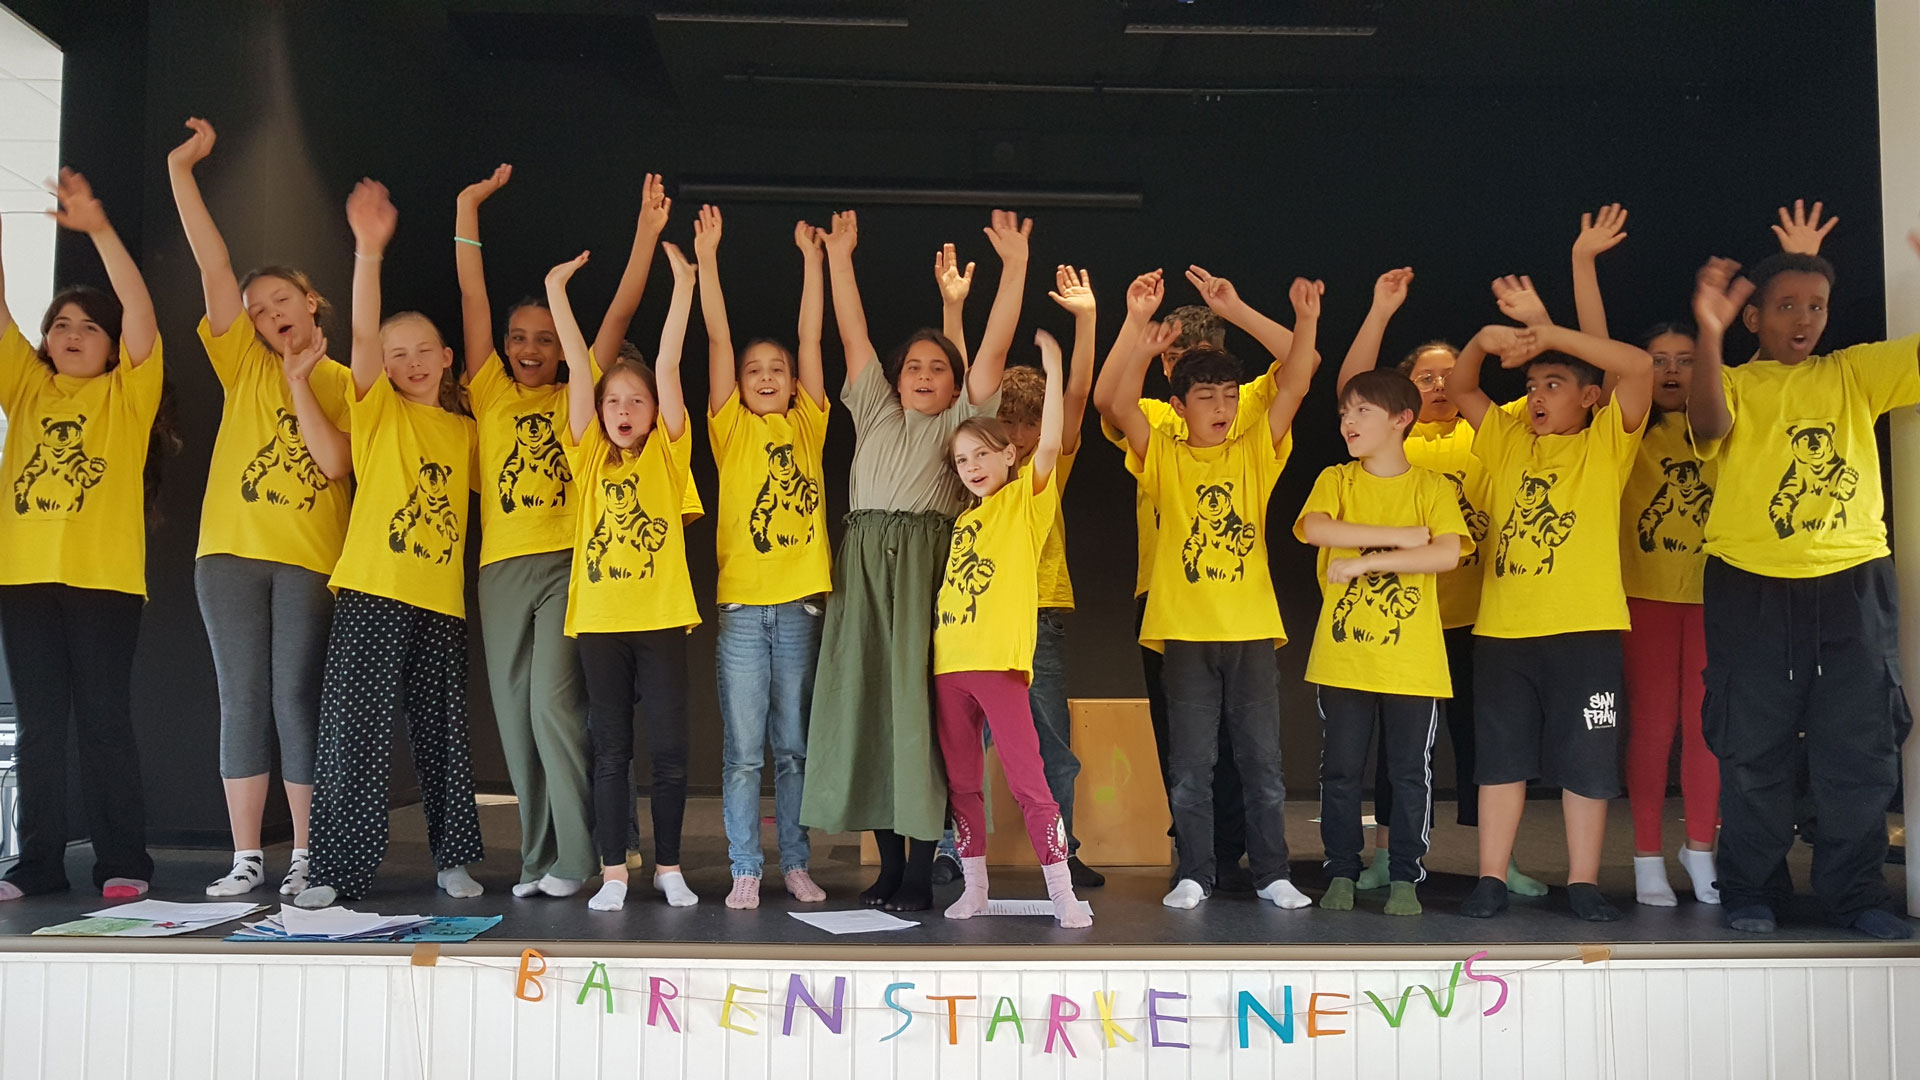 Eine Gruppe von Kindern steht mit erhobenen Armen auf einer Bühne. Die Kinder tragen passende gelbe Shirts mit schwarzen Motiven. Die Bühnenfront ziert ein Schild mit der Aufschrift „BÄRENSTARKE NEWS“.